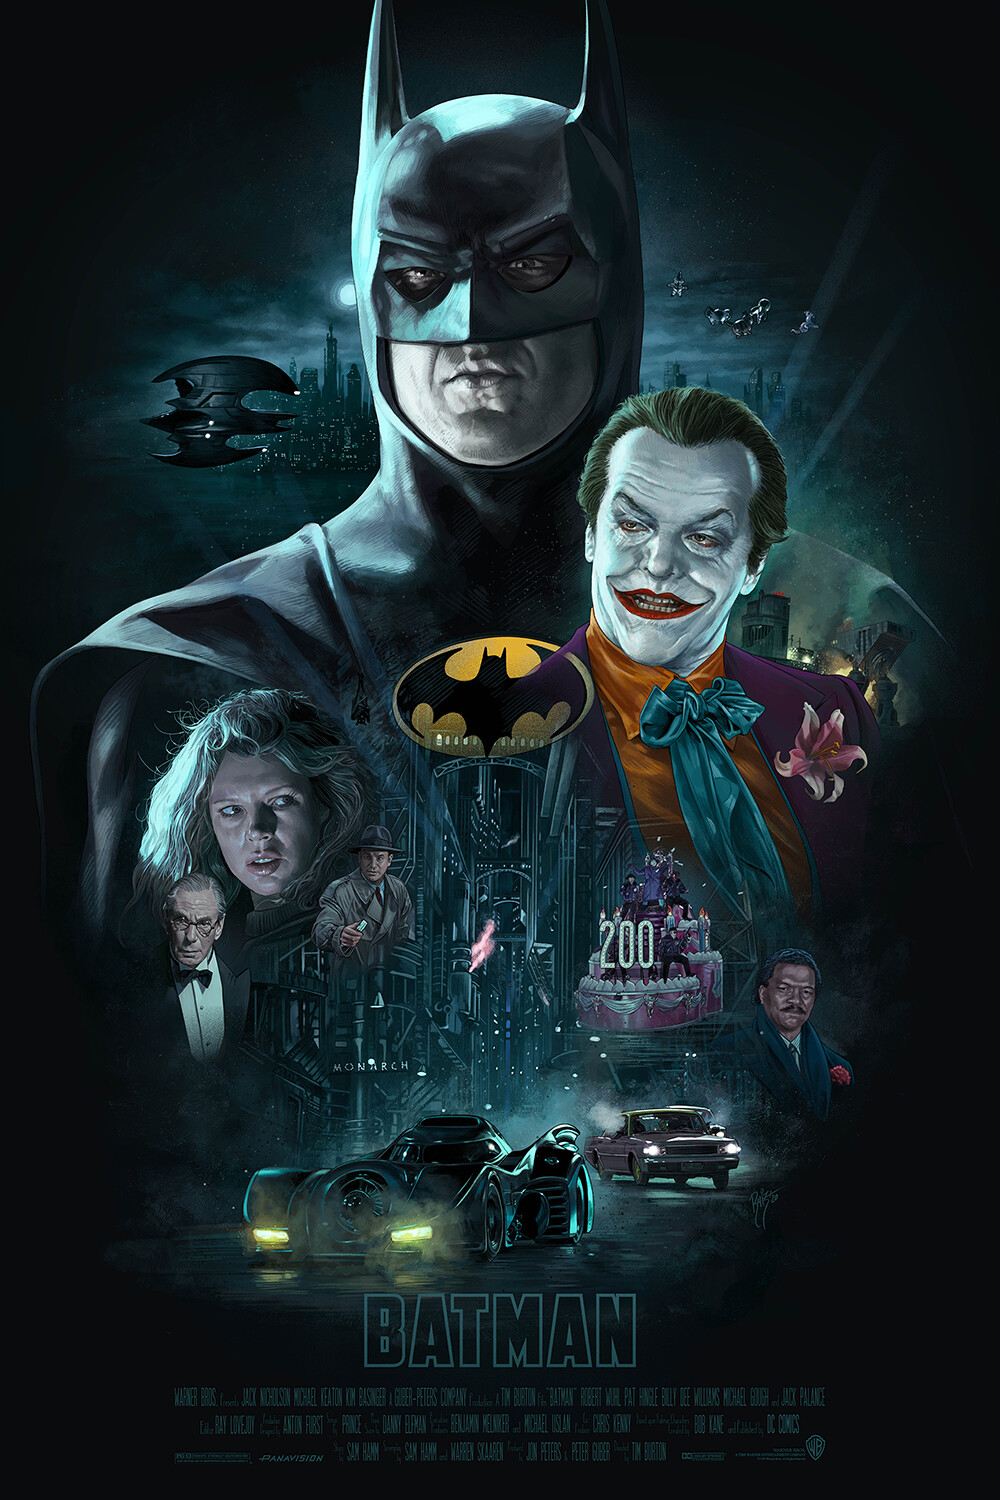 Burton batman. Бэтмен тим бёртон 1989. Batman 1989 poster. Бэтмен 1989 Постер.